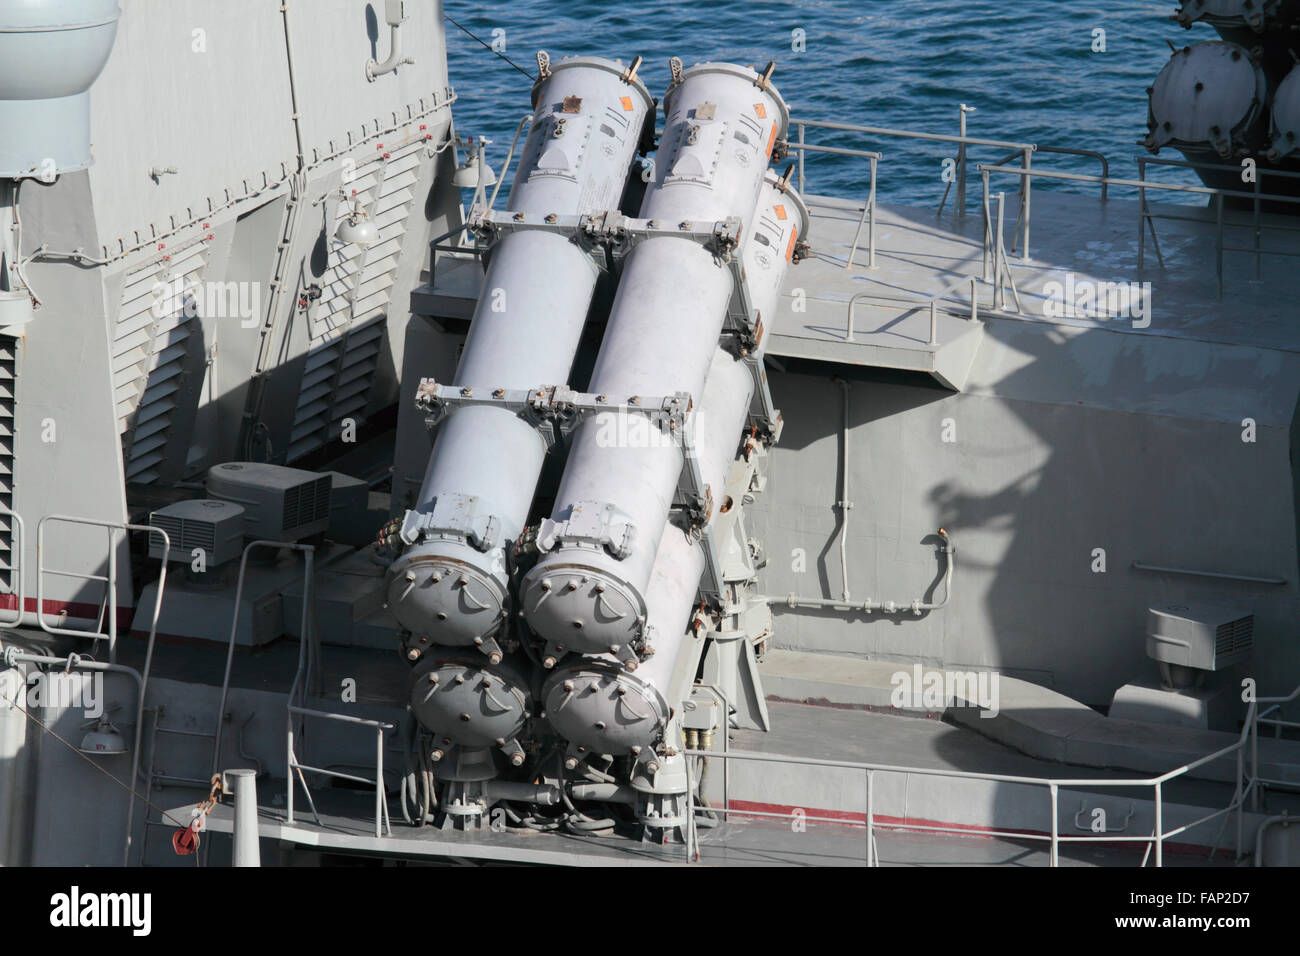 KH-35 Uran oder Switchblade Anti-Schiffs-Rakete Produkteinführung Kanister an Bord der russischen Marine Fregatte Yaroslav Mudry Stockfoto